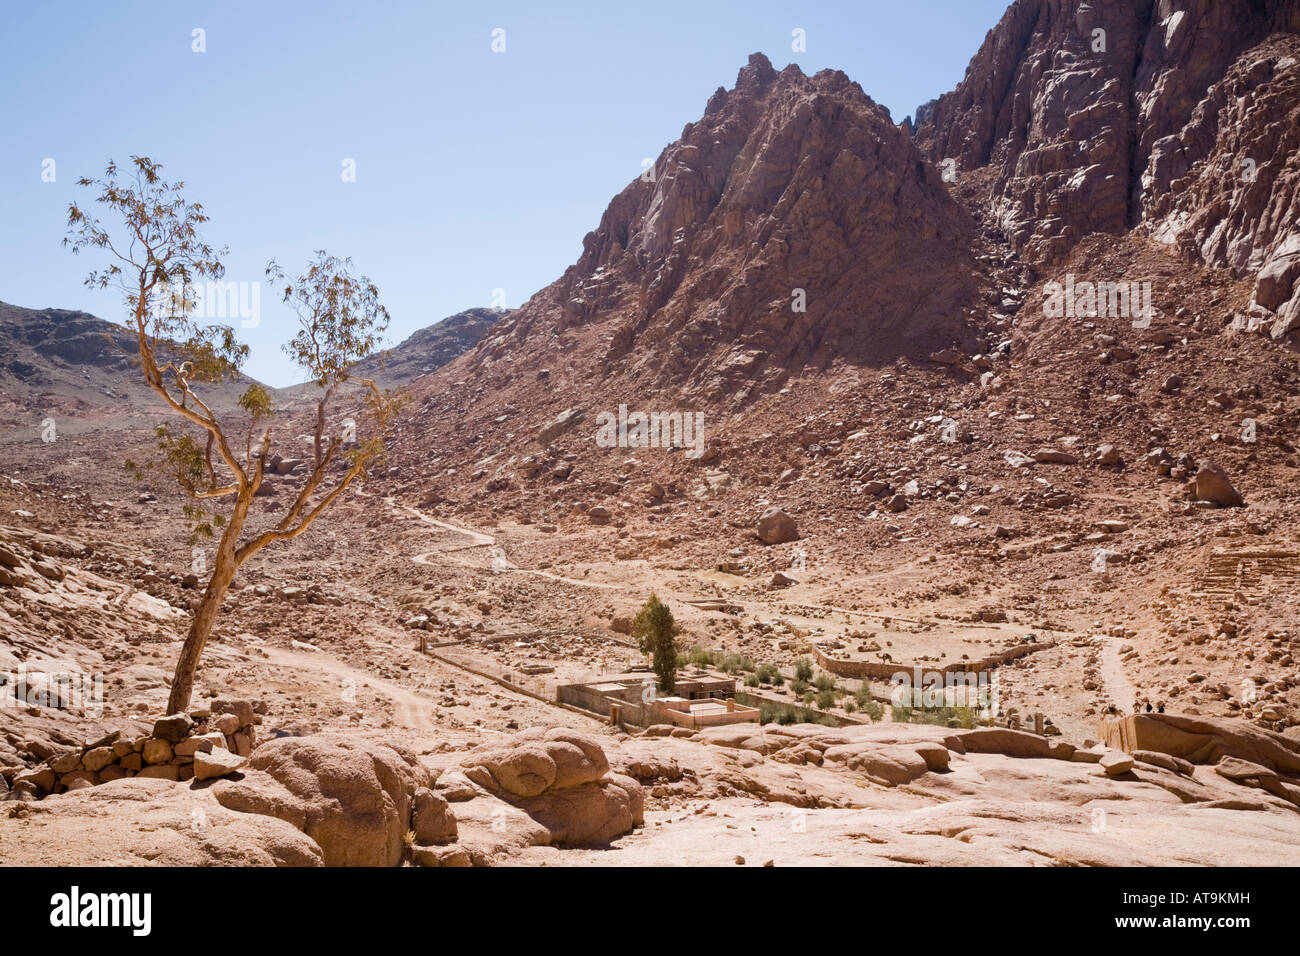 St Katherine Penisola del Sinai Egitto deserto arido valle di wadi paesaggio sotto il monte Sinai in granito rosso alta montagna Foto Stock